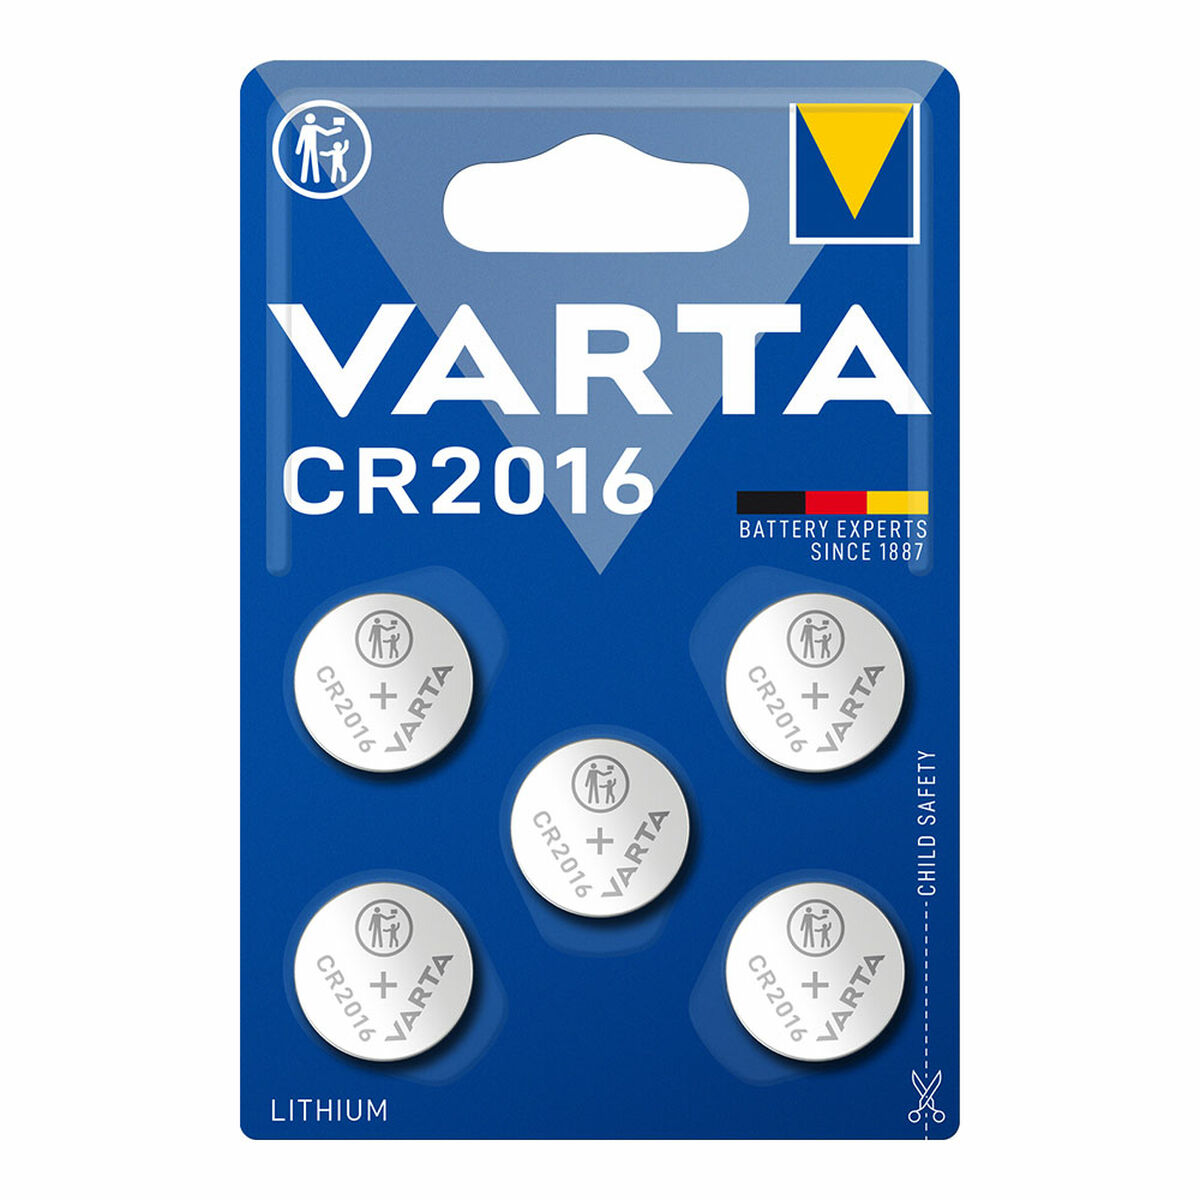 Lithiumknopfzellen Varta 6016101415 CR2016 3 V (5 Stück)